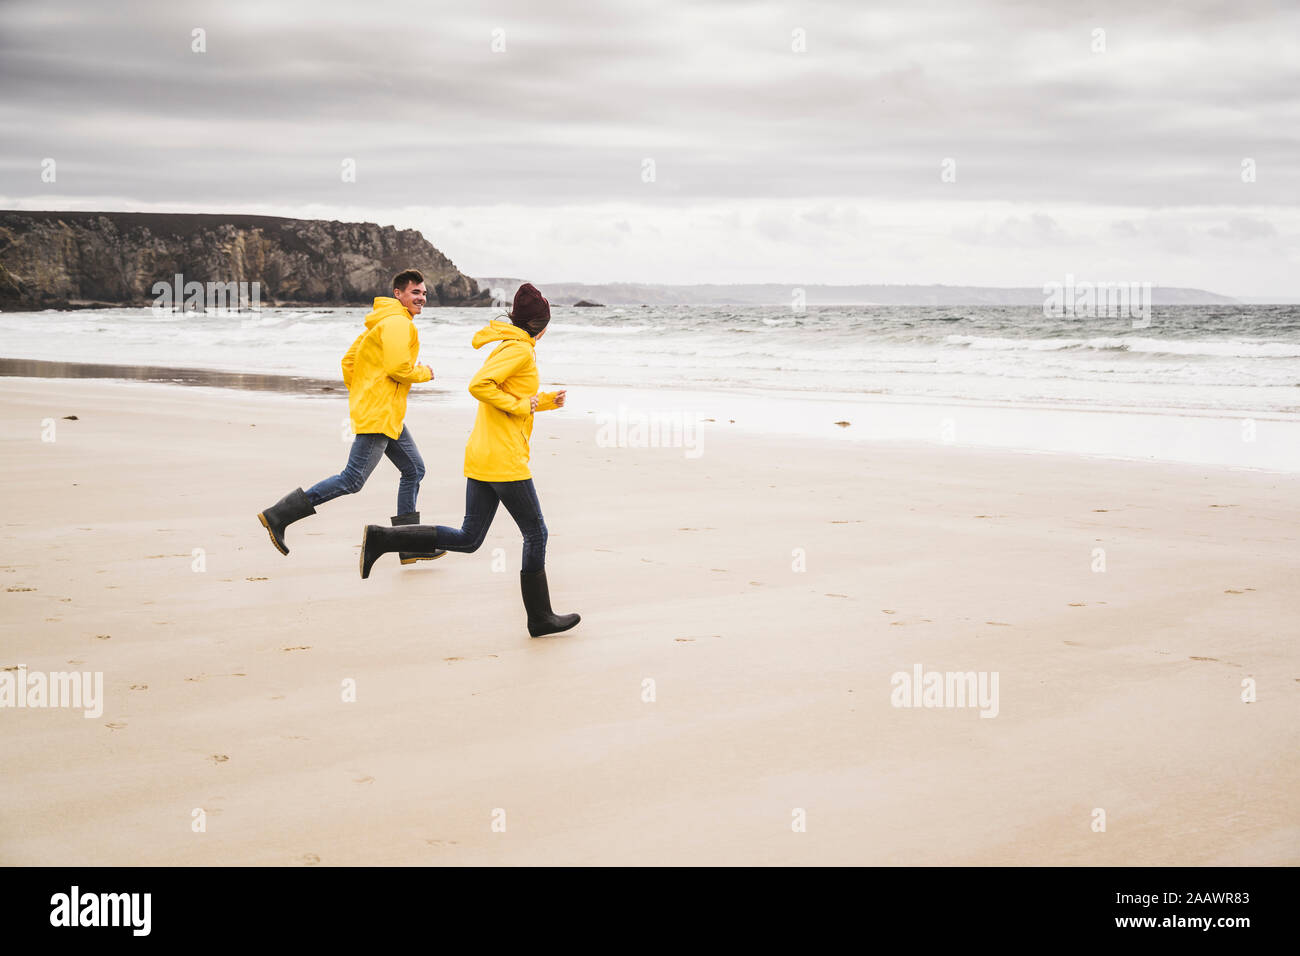 Jeune femme portant des vestes de pluie jaune et tournant à la plage, Bretagne, France Banque D'Images